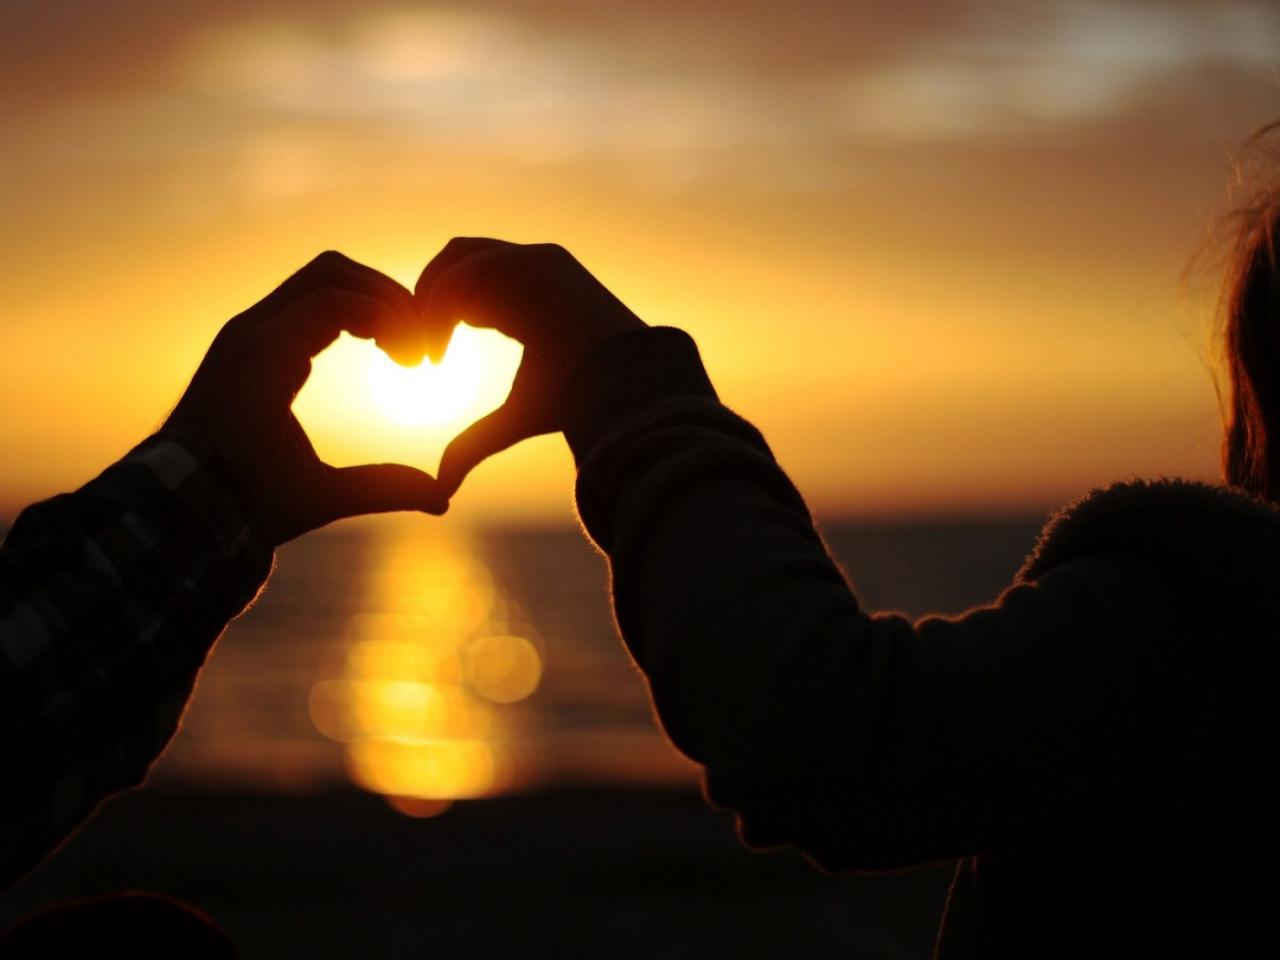 обои Сердечко руками из солнечного заката фото